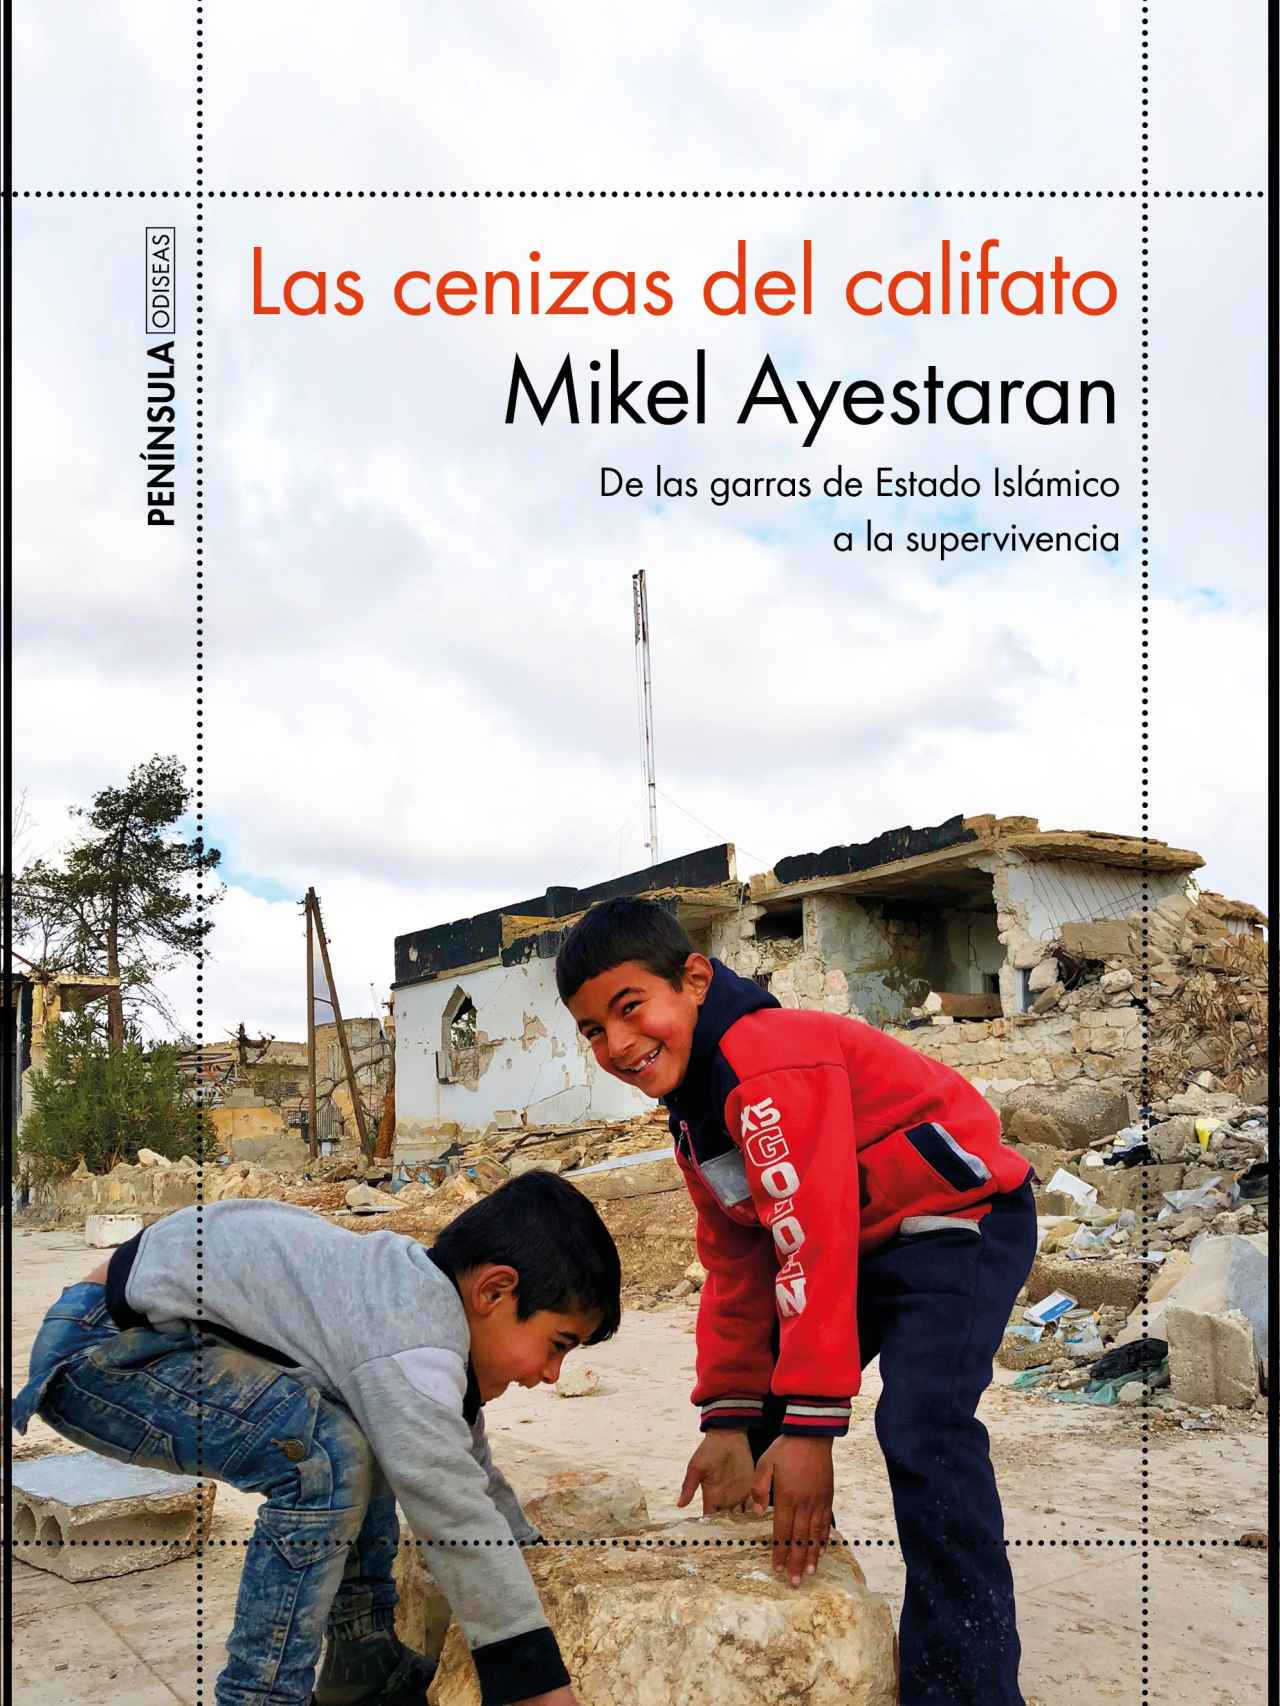 Portada del nuevo libro de Mikel Ayestaran, Las cenizas del califato (Península).